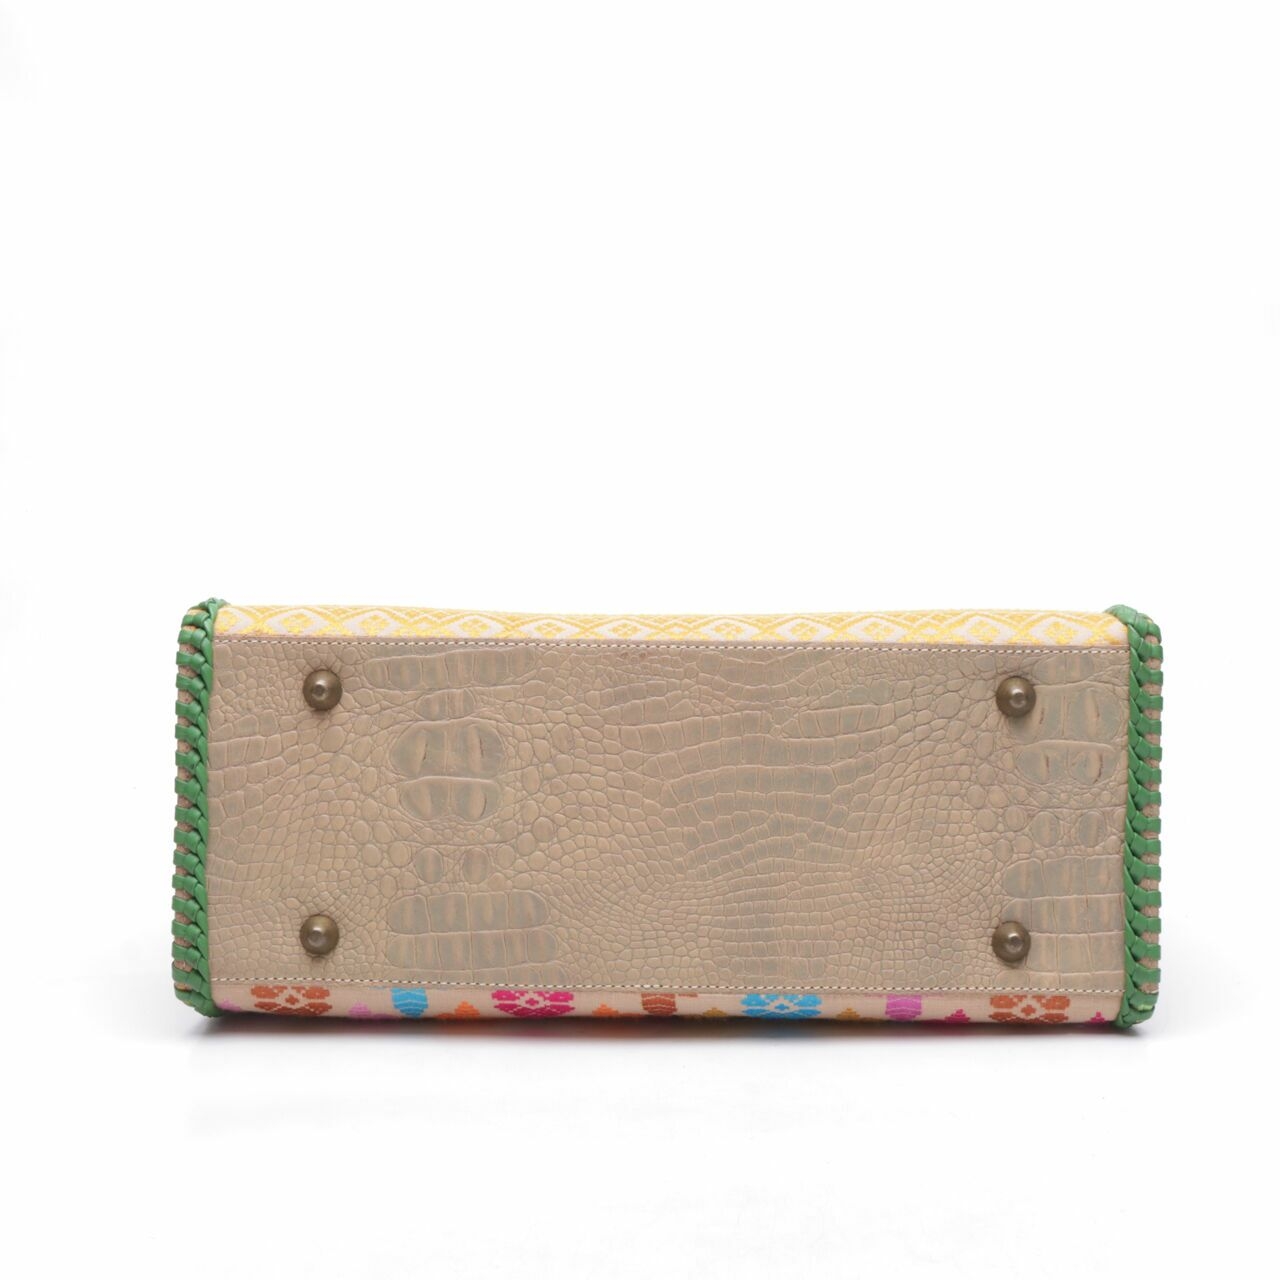 Pribumi Multicolor Handbag